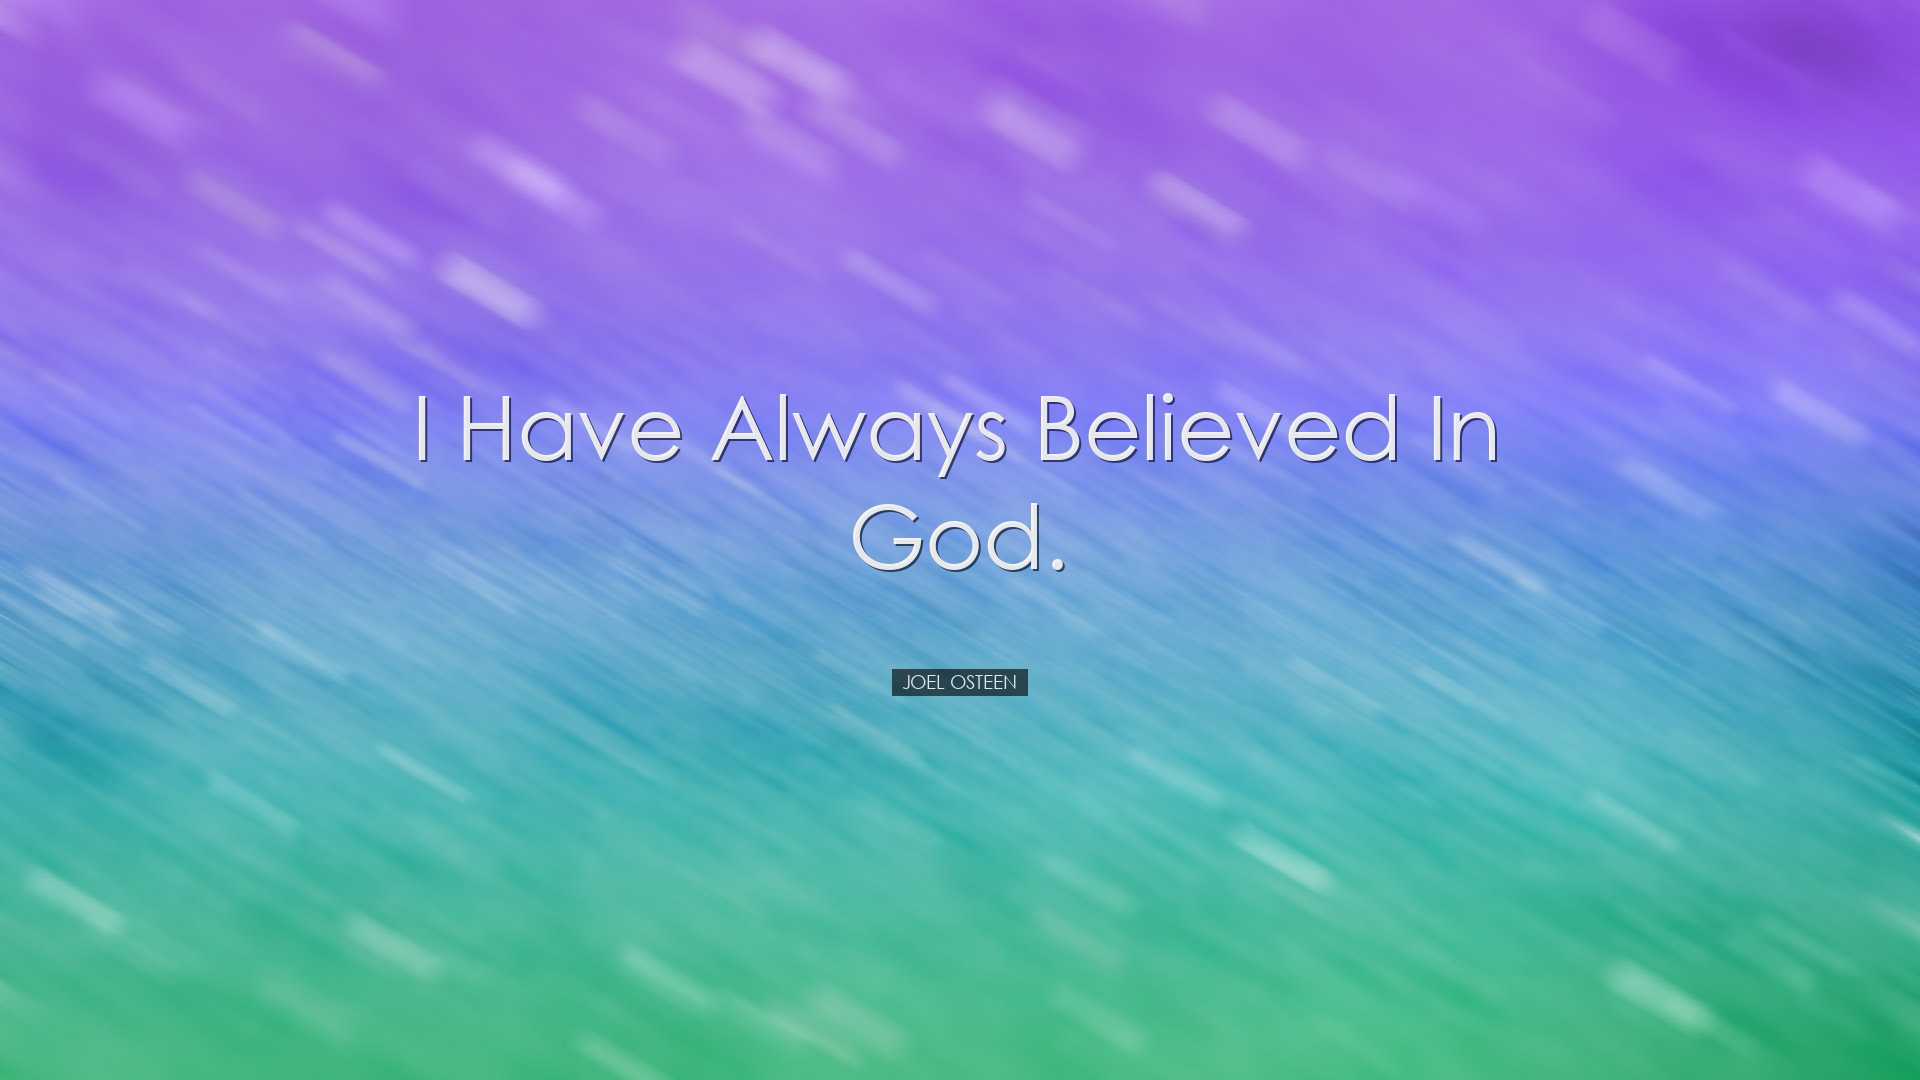 I have always believed in God. - Joel Osteen